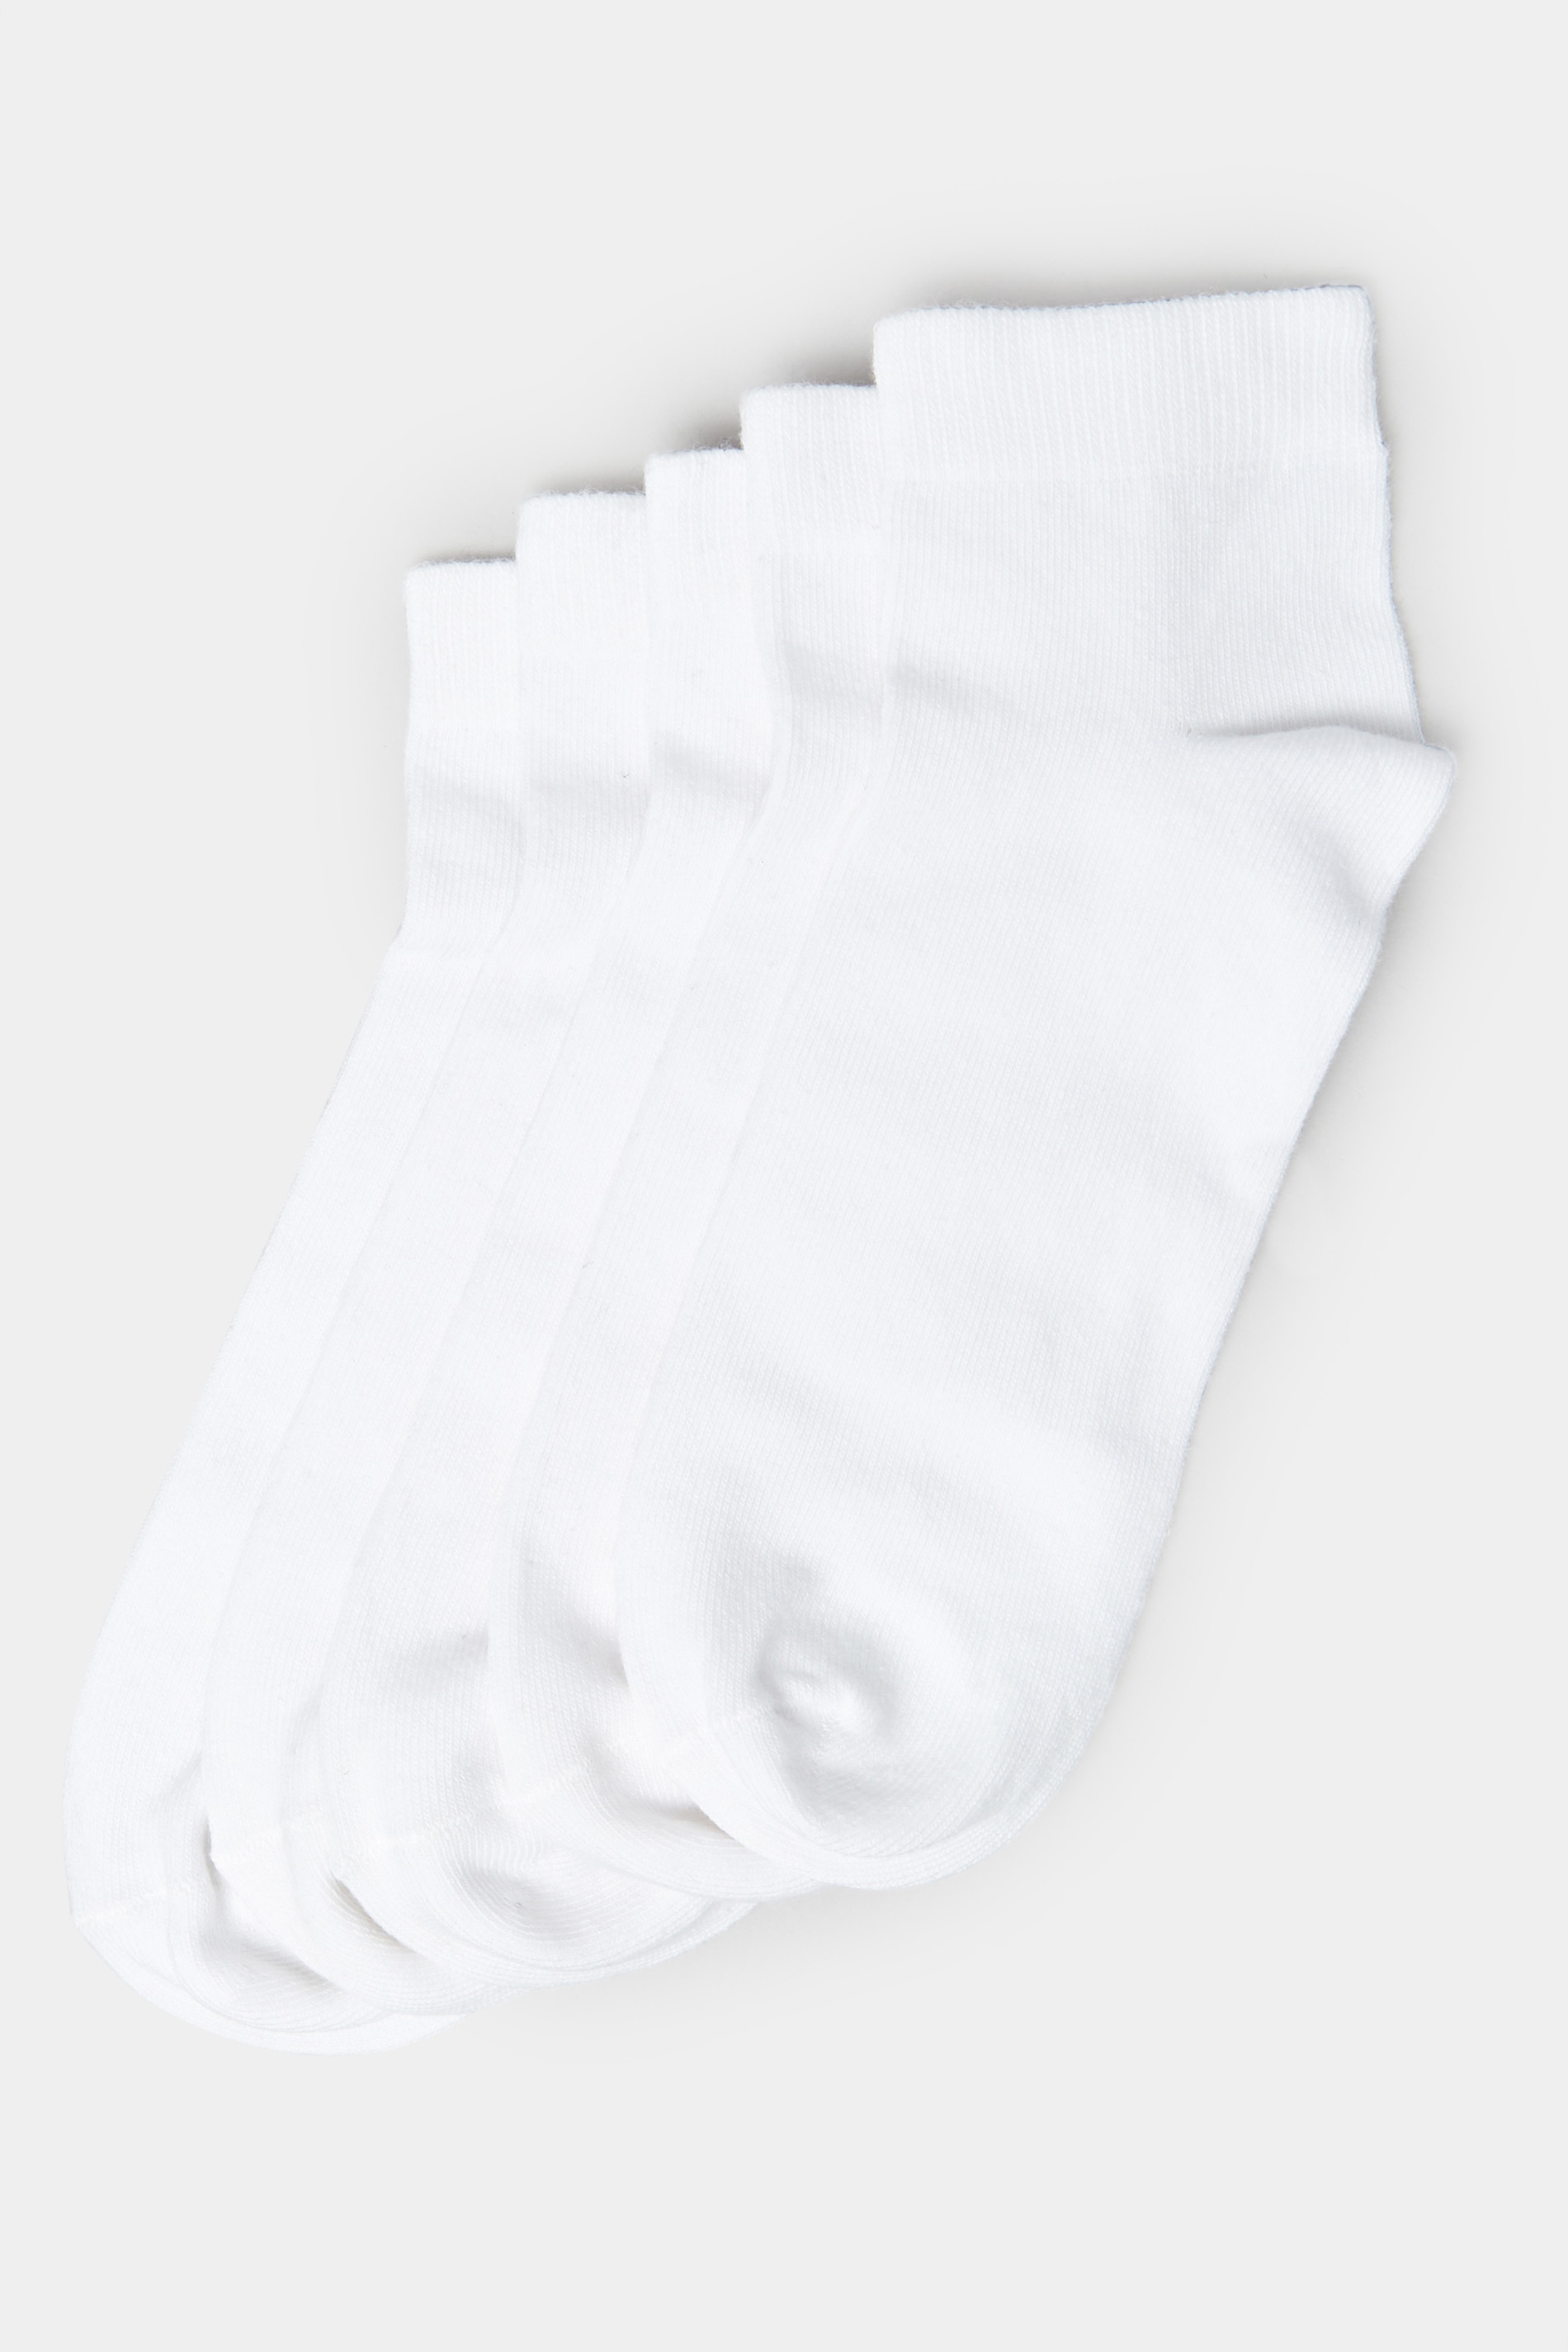 BadRhino White 5 Pack Trainer Socks | BadRhino 3